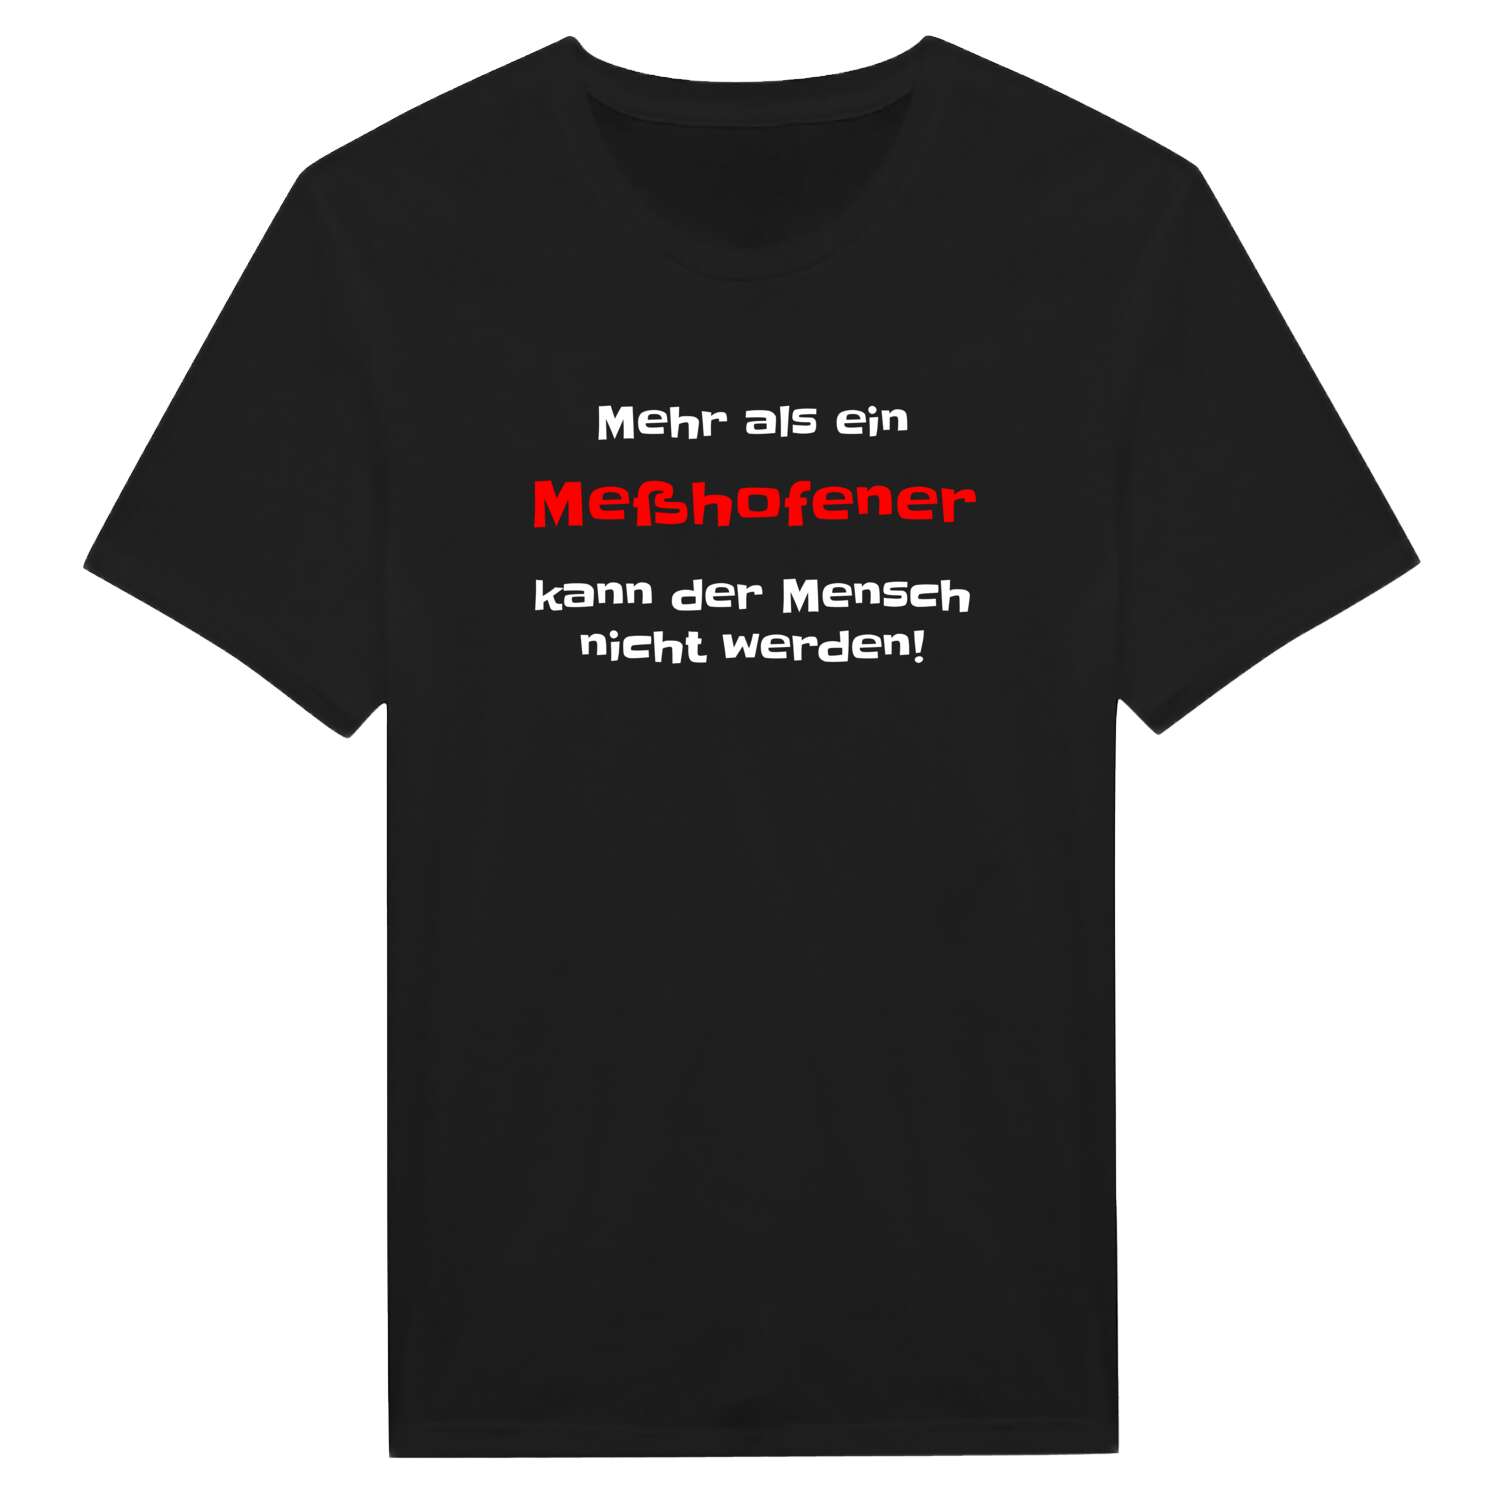 Meßhofen T-Shirt »Mehr als ein«